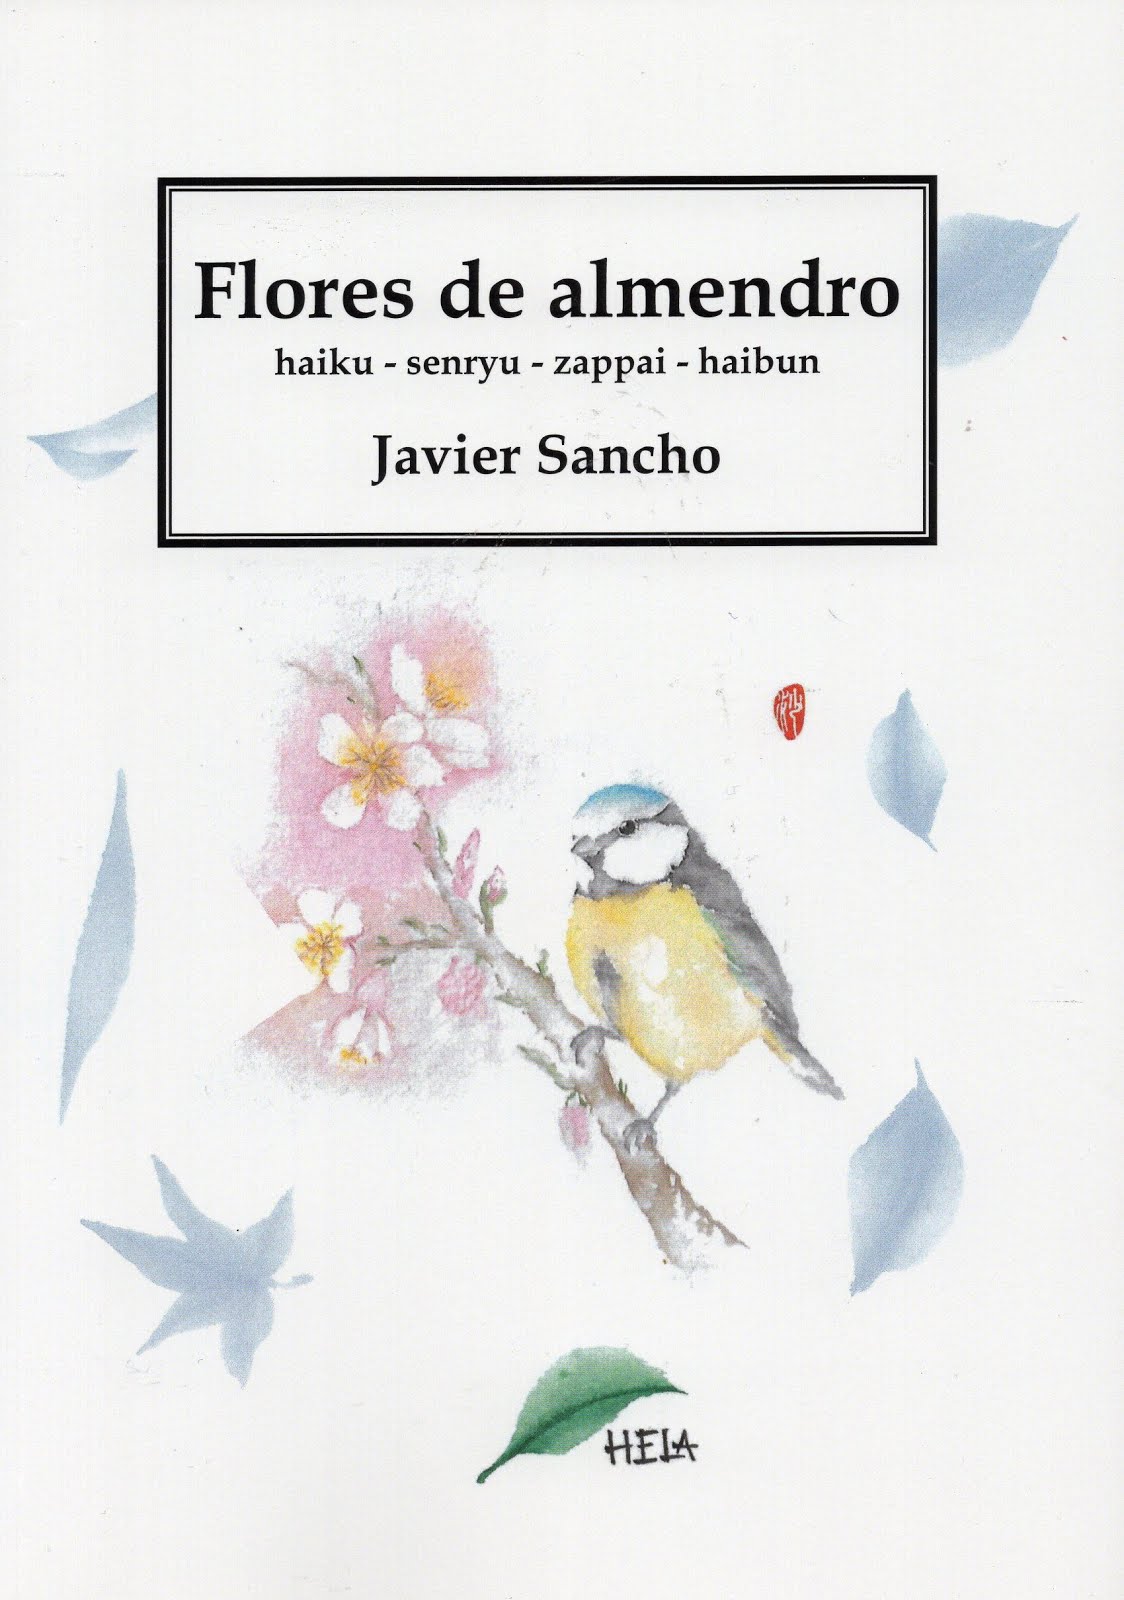 Flores de almendro, Javier Sancho. HELA colección Hojas de té